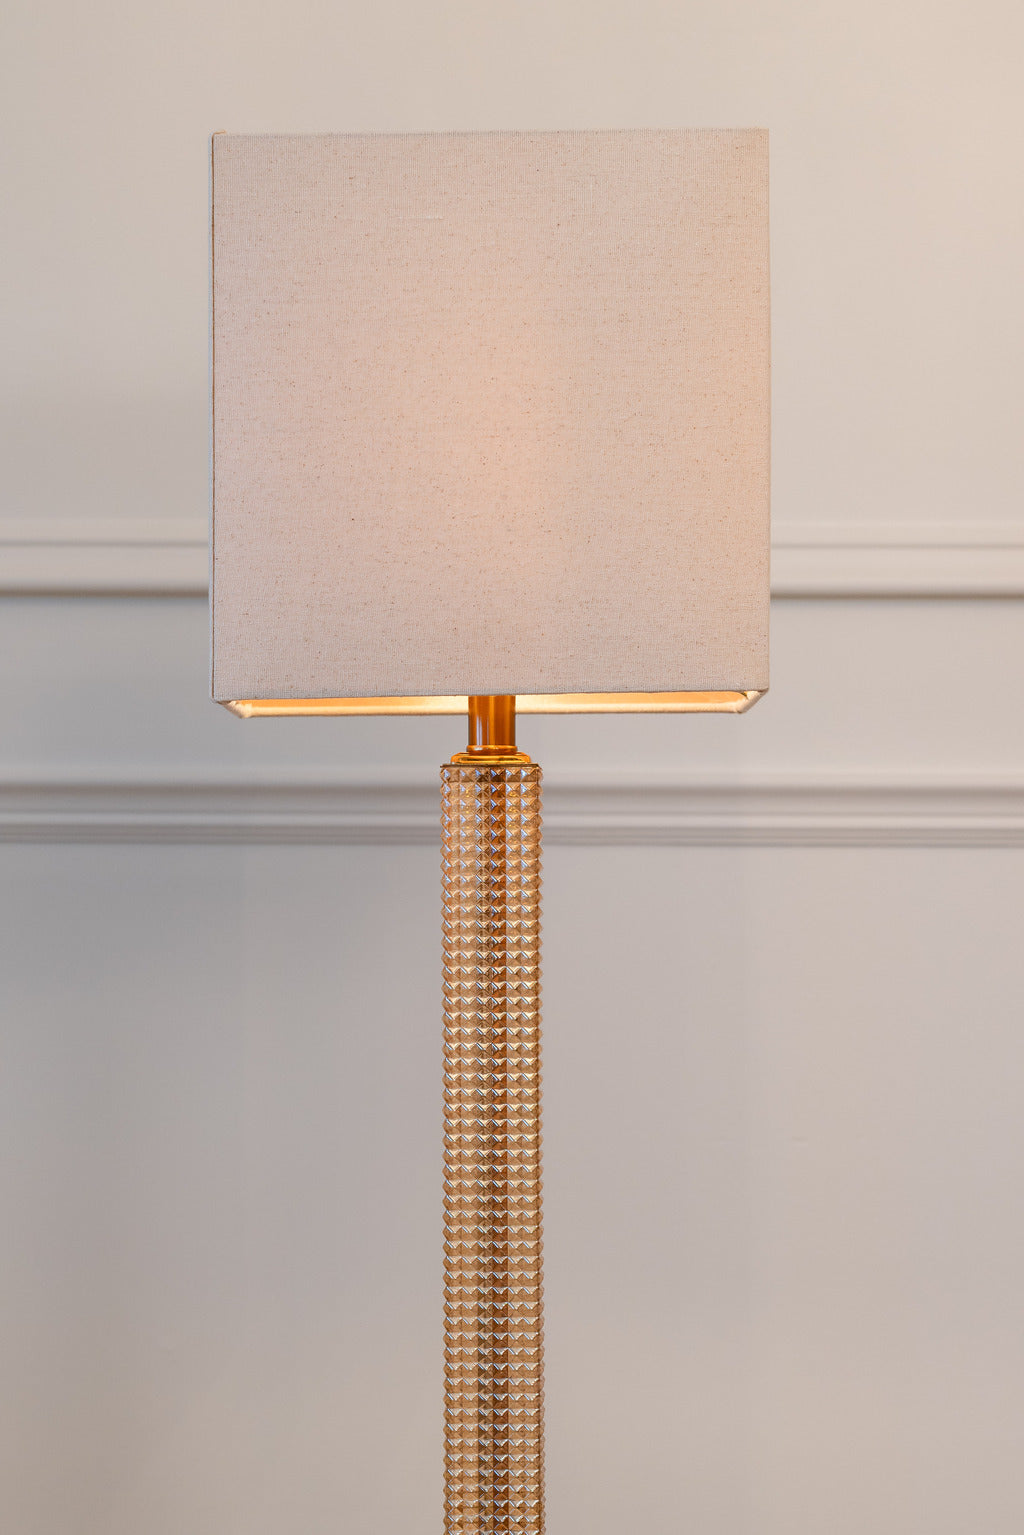 Blush lampshade, Blush lamp, Pink lampshades, gold table lamp, Lamps, Table lamp